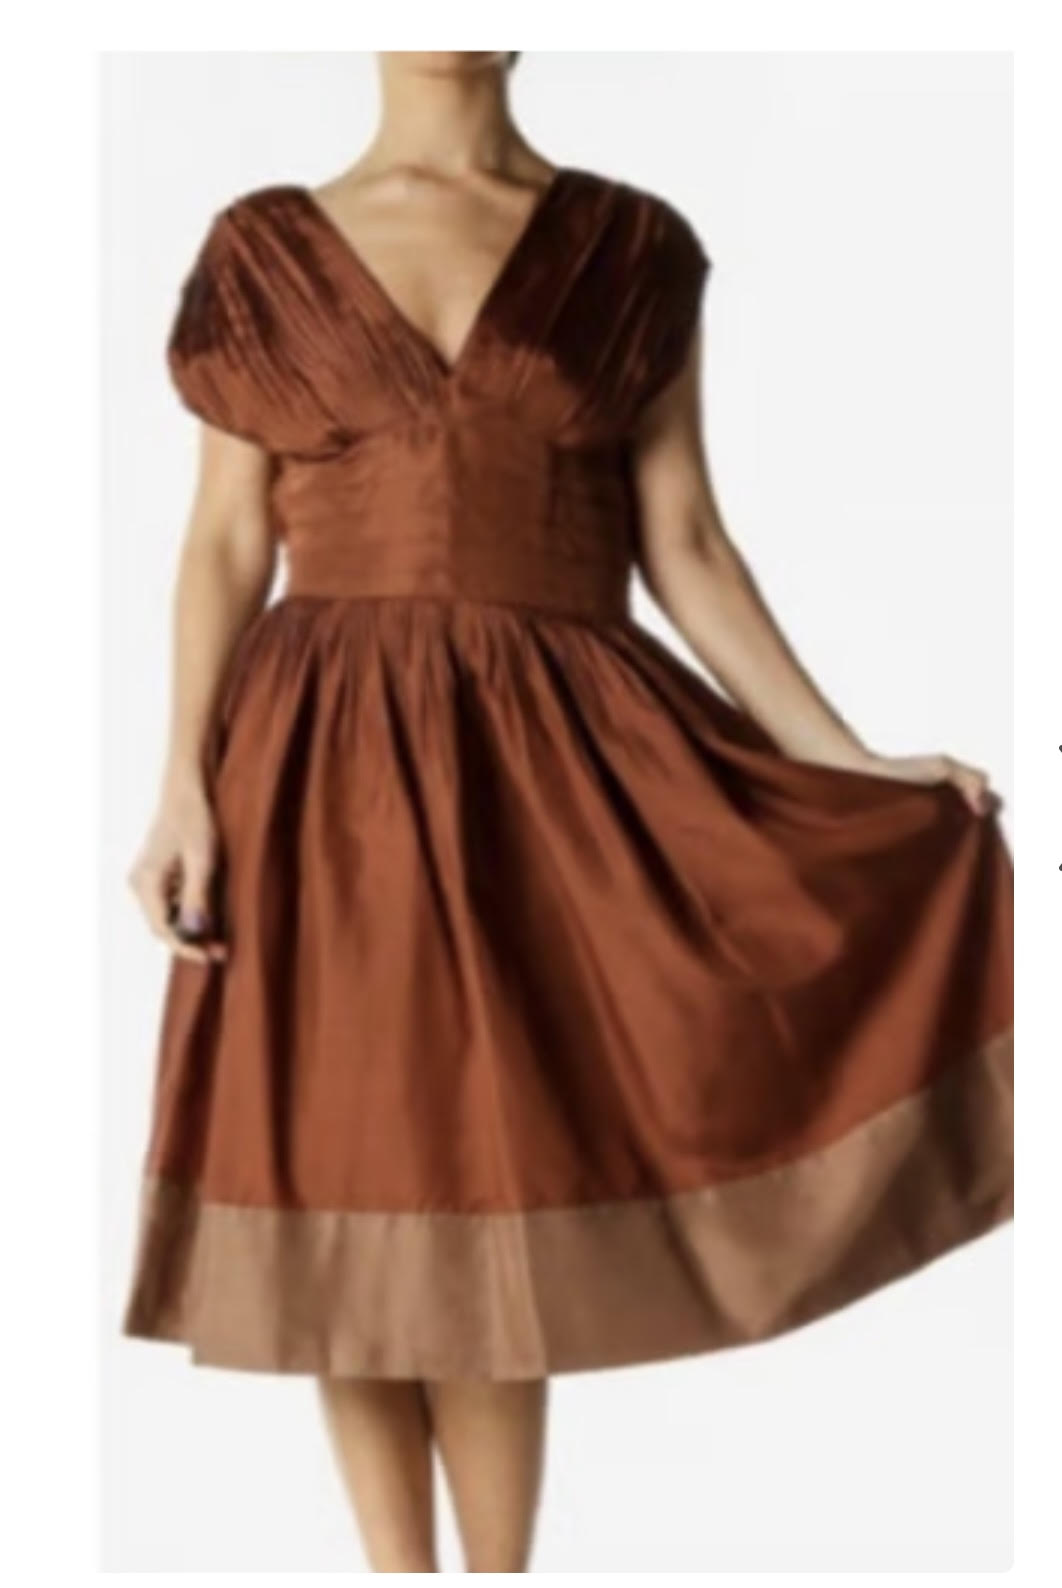 BCBG MaxAzria silk copper brown cocktail Dress